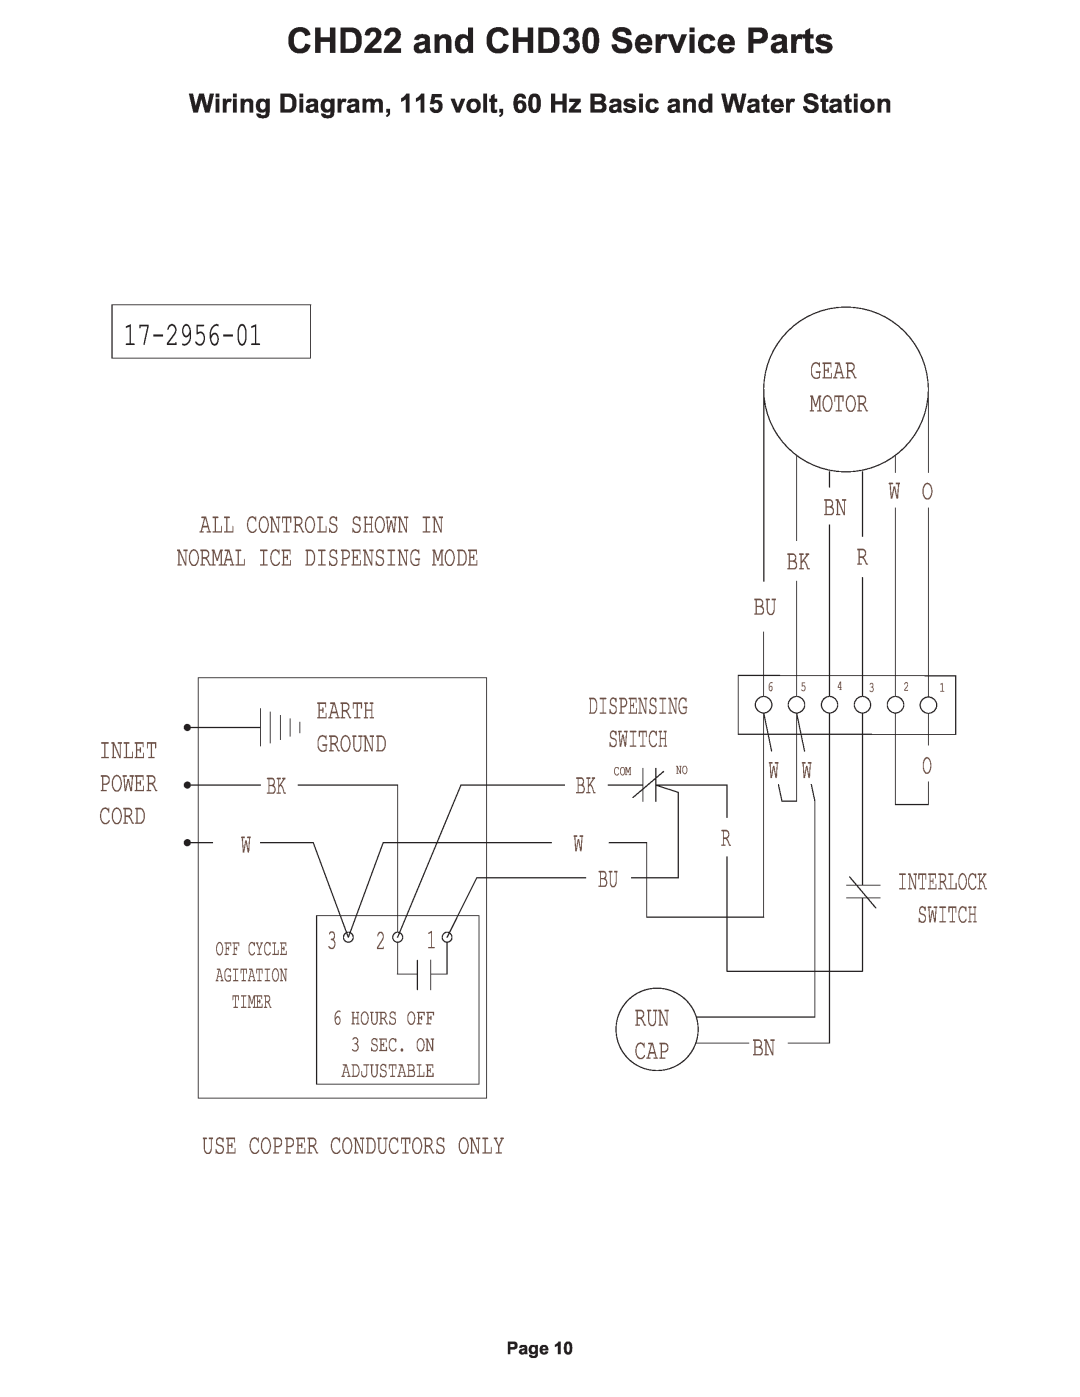 Cornelius 17-2956-01, CHD22 and CHD30 Service Parts, Wiring Diagram, 115 volt, 60 Hz Basic and Water Station, Ground 